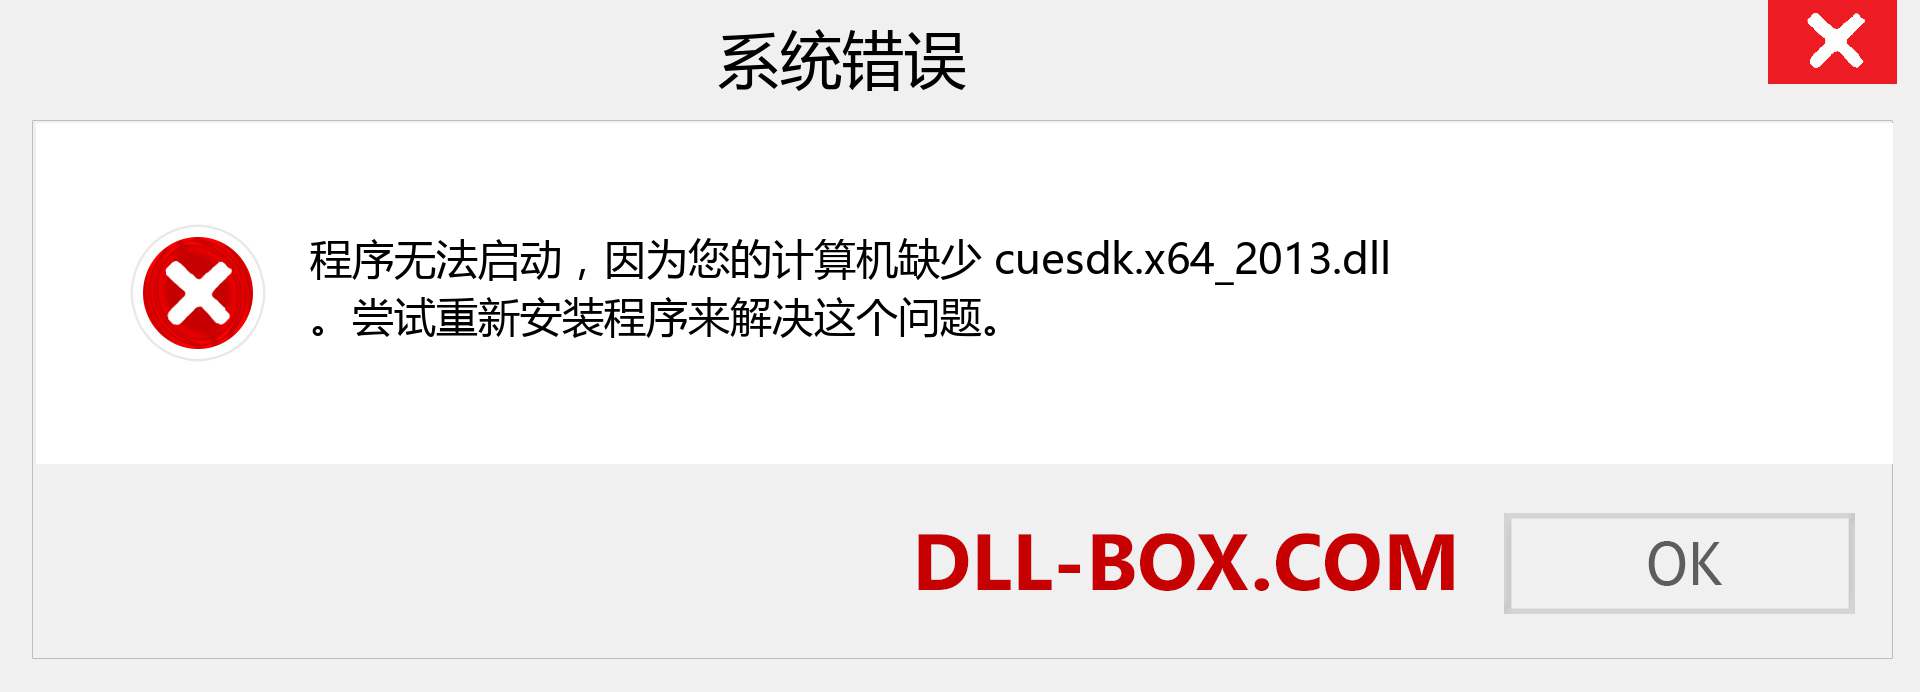 cuesdk.x64_2013.dll 文件丢失？。 适用于 Windows 7、8、10 的下载 - 修复 Windows、照片、图像上的 cuesdk.x64_2013 dll 丢失错误